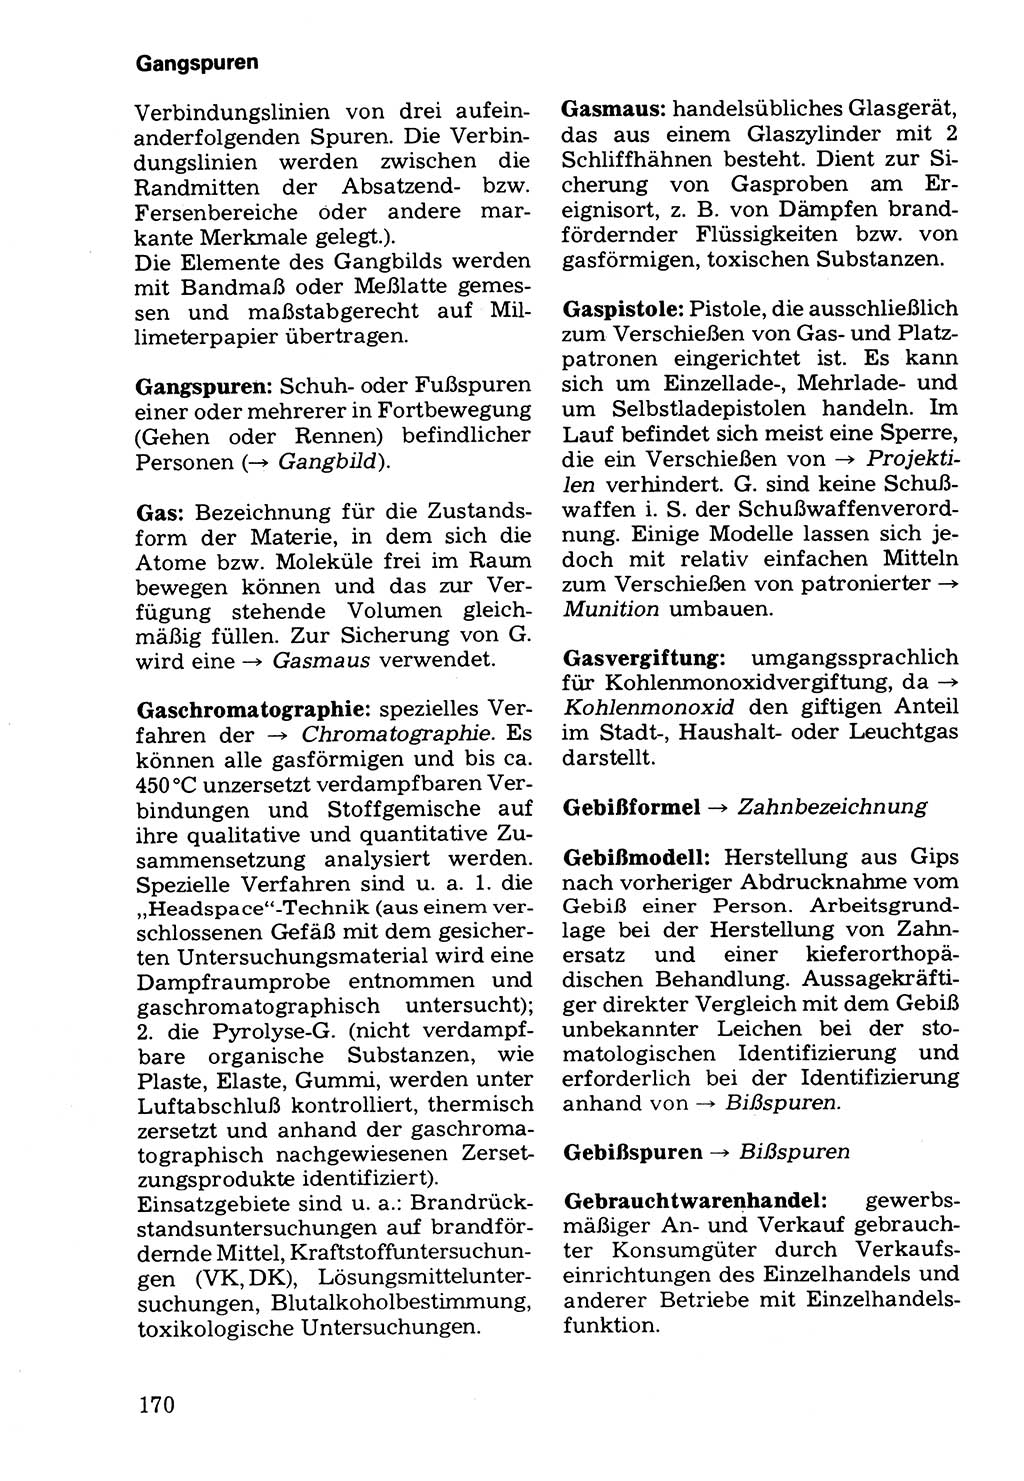 Wörterbuch der sozialistischen Kriminalistik [Deutsche Demokratische Republik (DDR)] 1981, Seite 170 (Wb. soz. Krim. DDR 1981, S. 170)